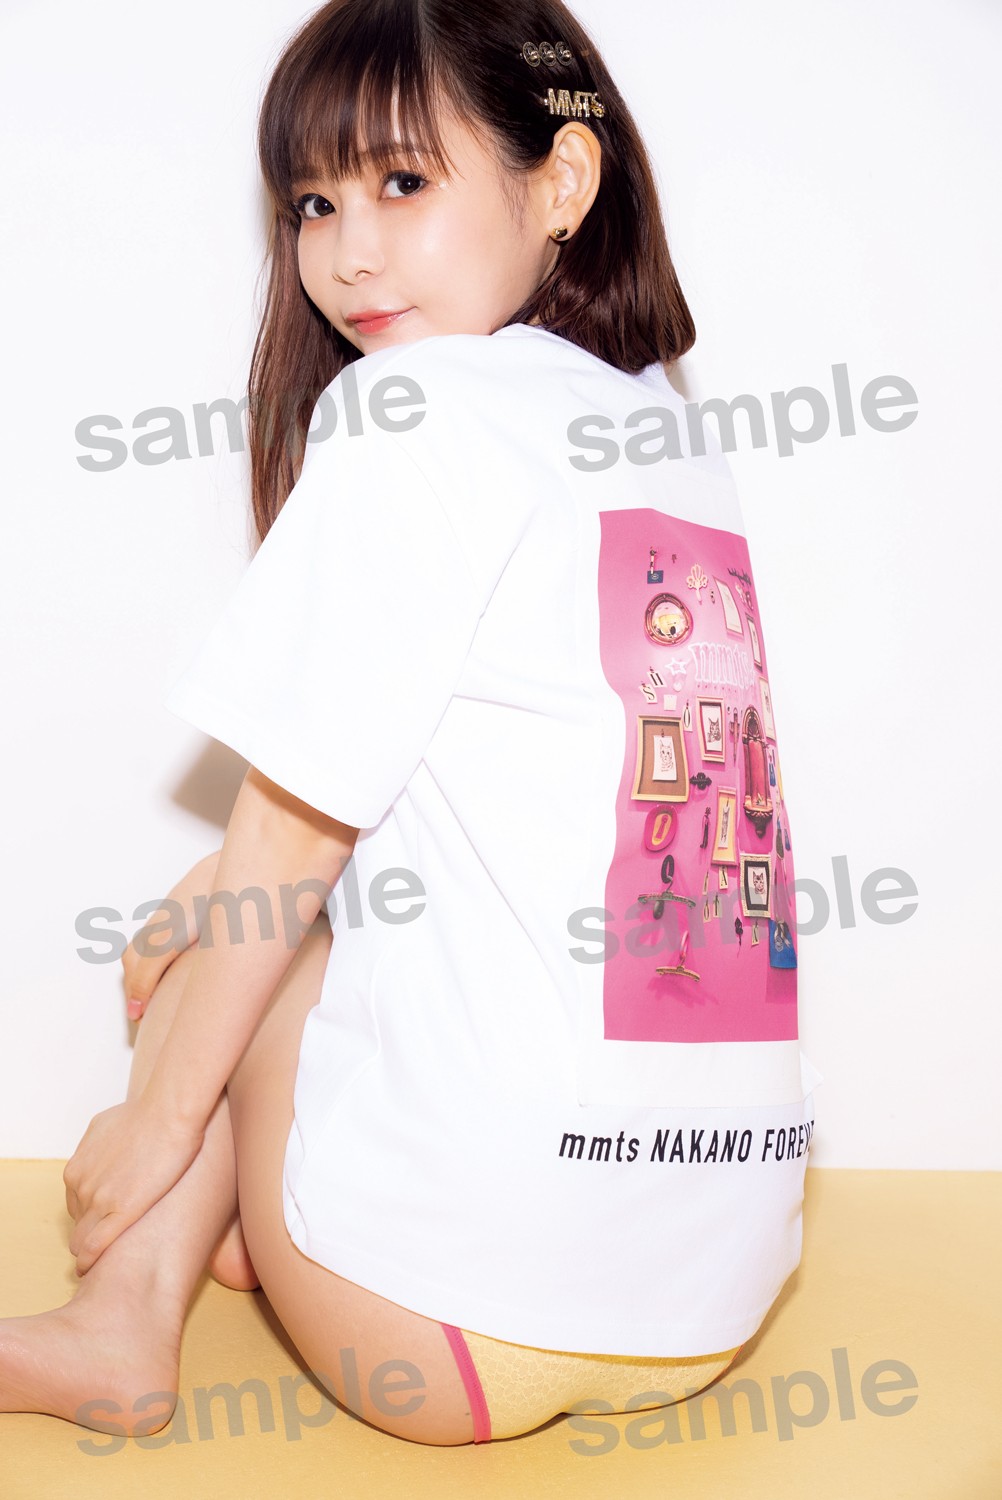 中川翔子写真集「ミラクルミライ」に封入される特典ポストカードの1種類、Tシャツにレースショーツのカット